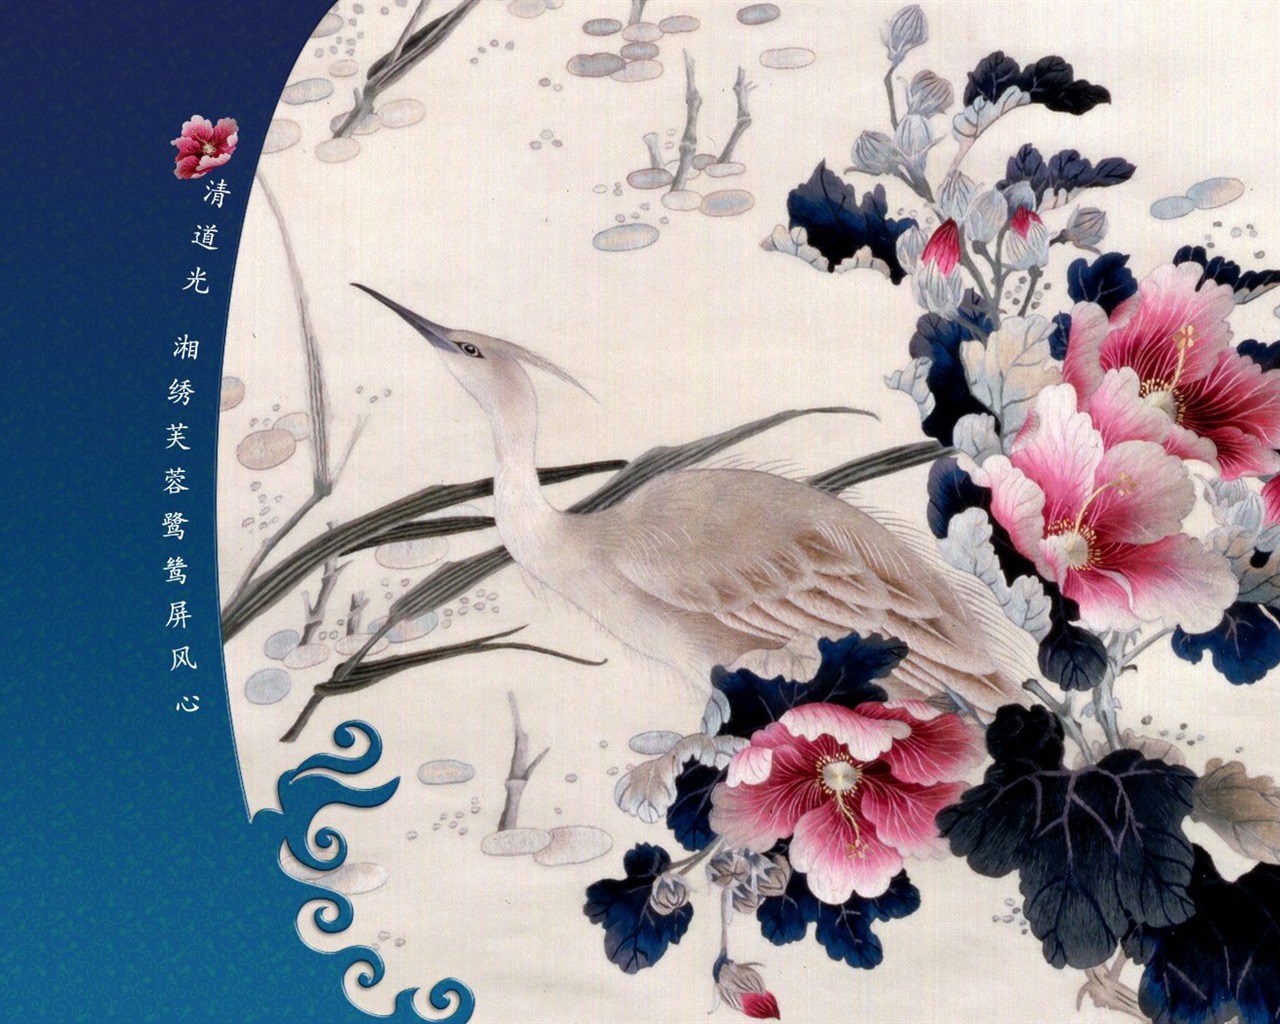 北京故宫博物院 文物展壁纸(二)23 - 1280x1024